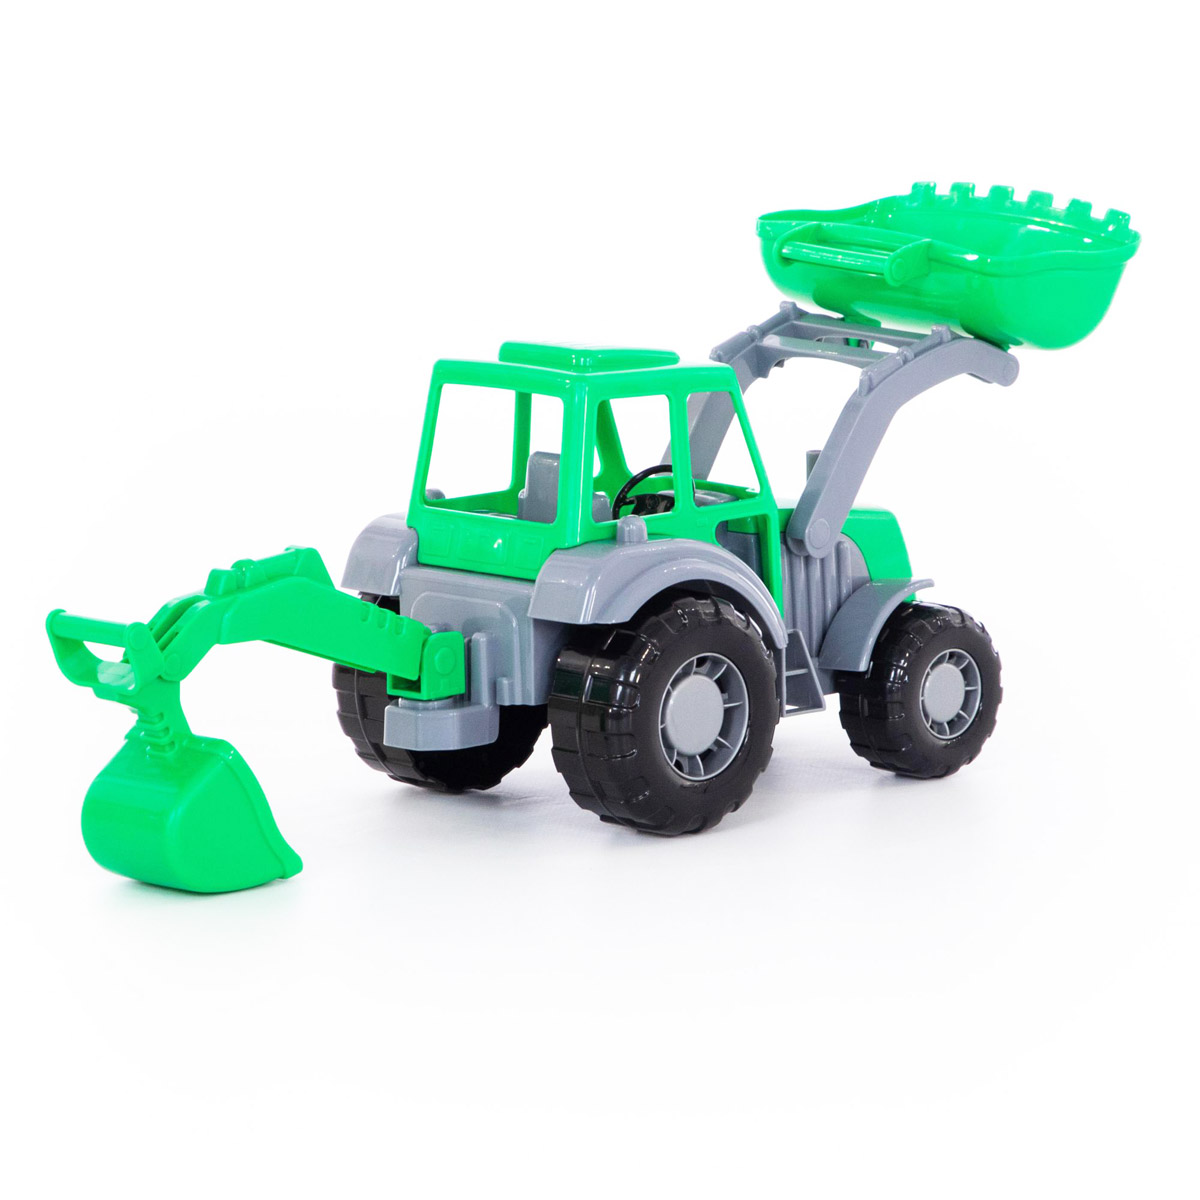 Іграшковий трактор - екскаватор 'Алтай'